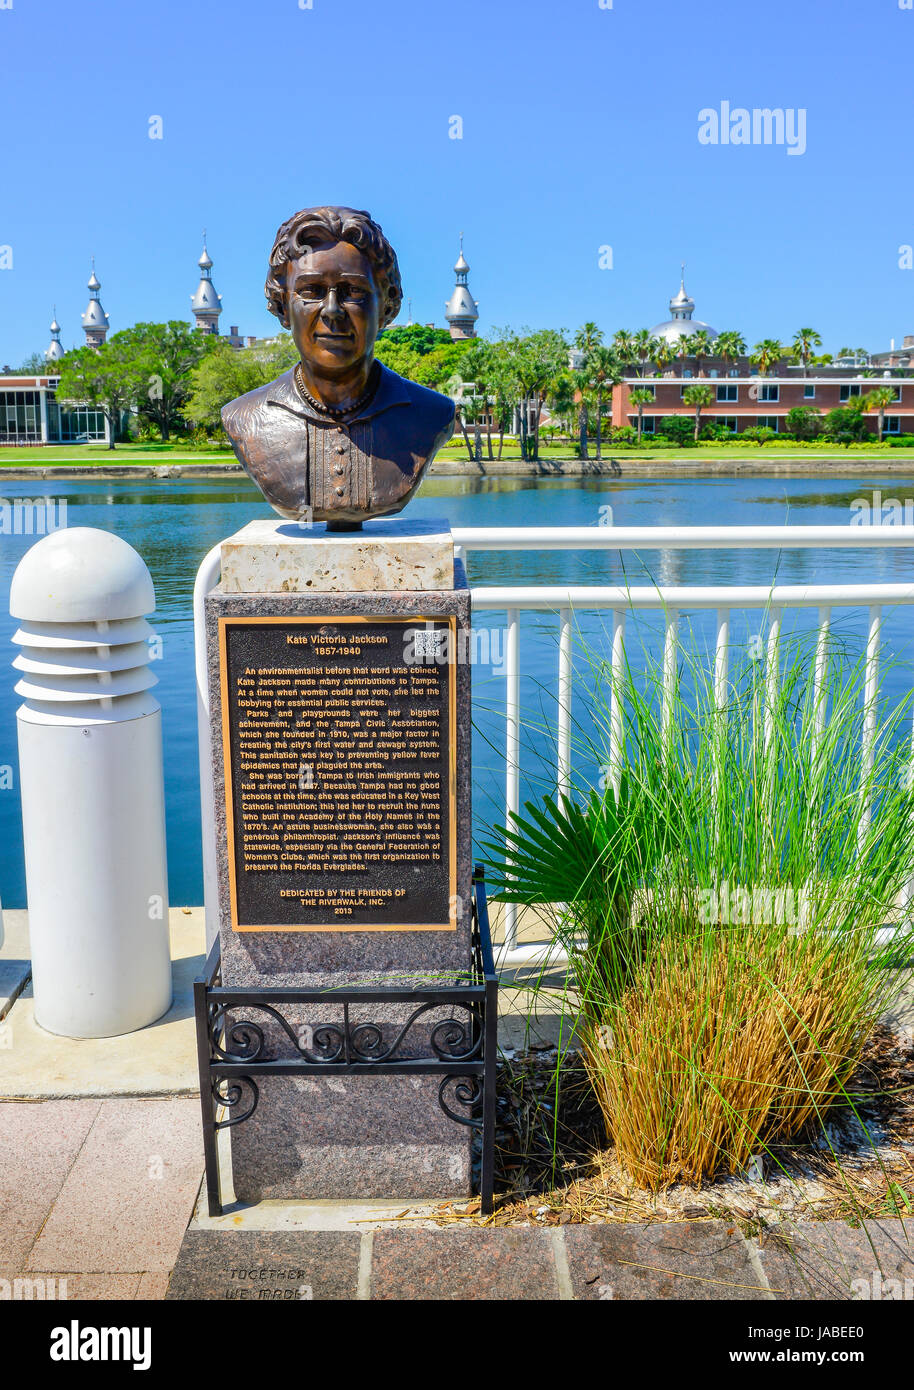 Un busto de bronce de Kate Victoria Jackson es parte del monumento histórico de Tampa sendero a lo largo del paseo del río en el río Hillsborough en Tampa, FL. Foto de stock